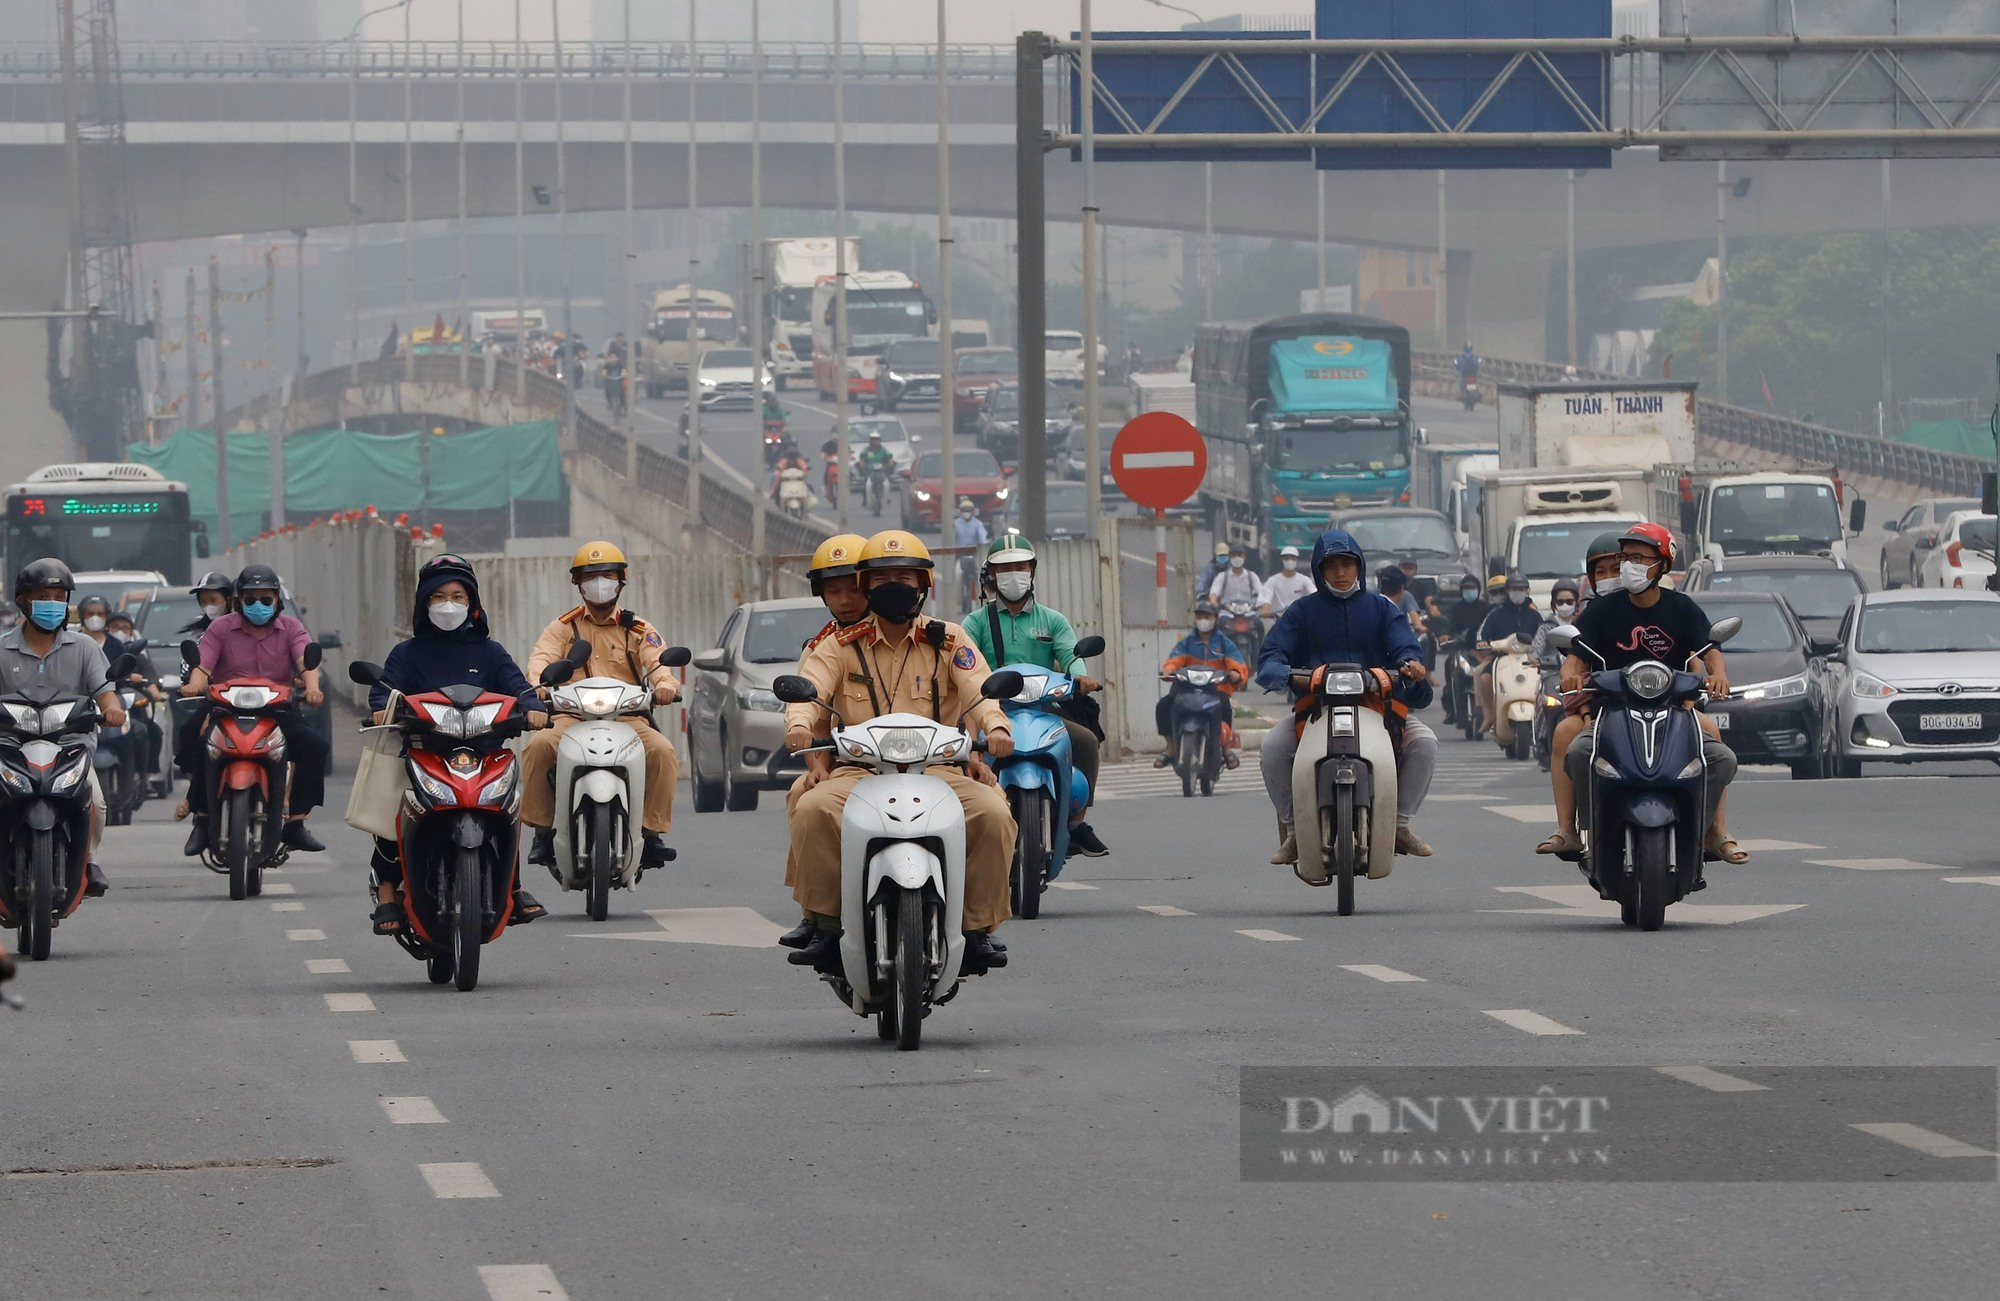 Sau phản ánh của Báo Dân Việt, CSGT Hà Nội tiếp tục xử lý hàng loạt xe khách vi phạm - Ảnh 2.